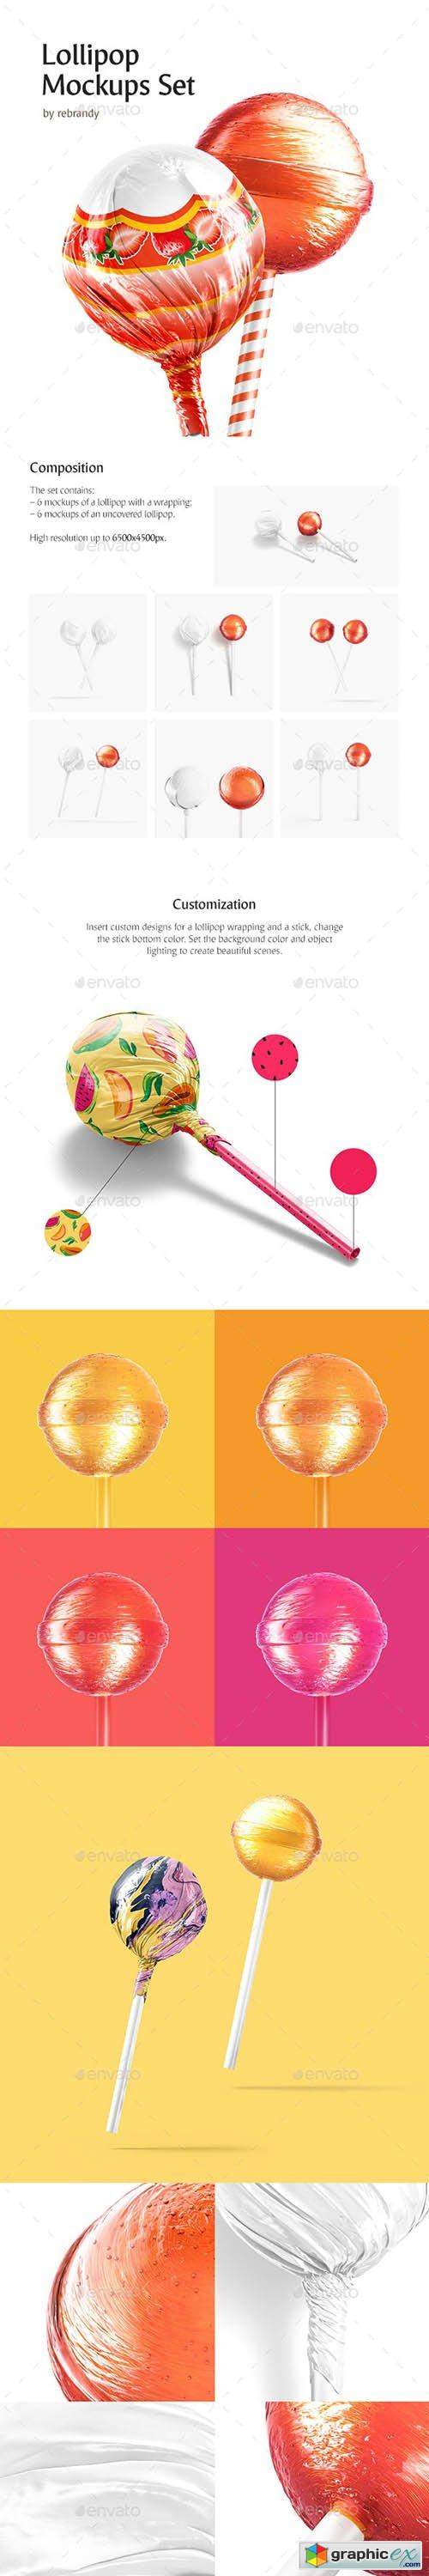 Lollipop Mockups Set 